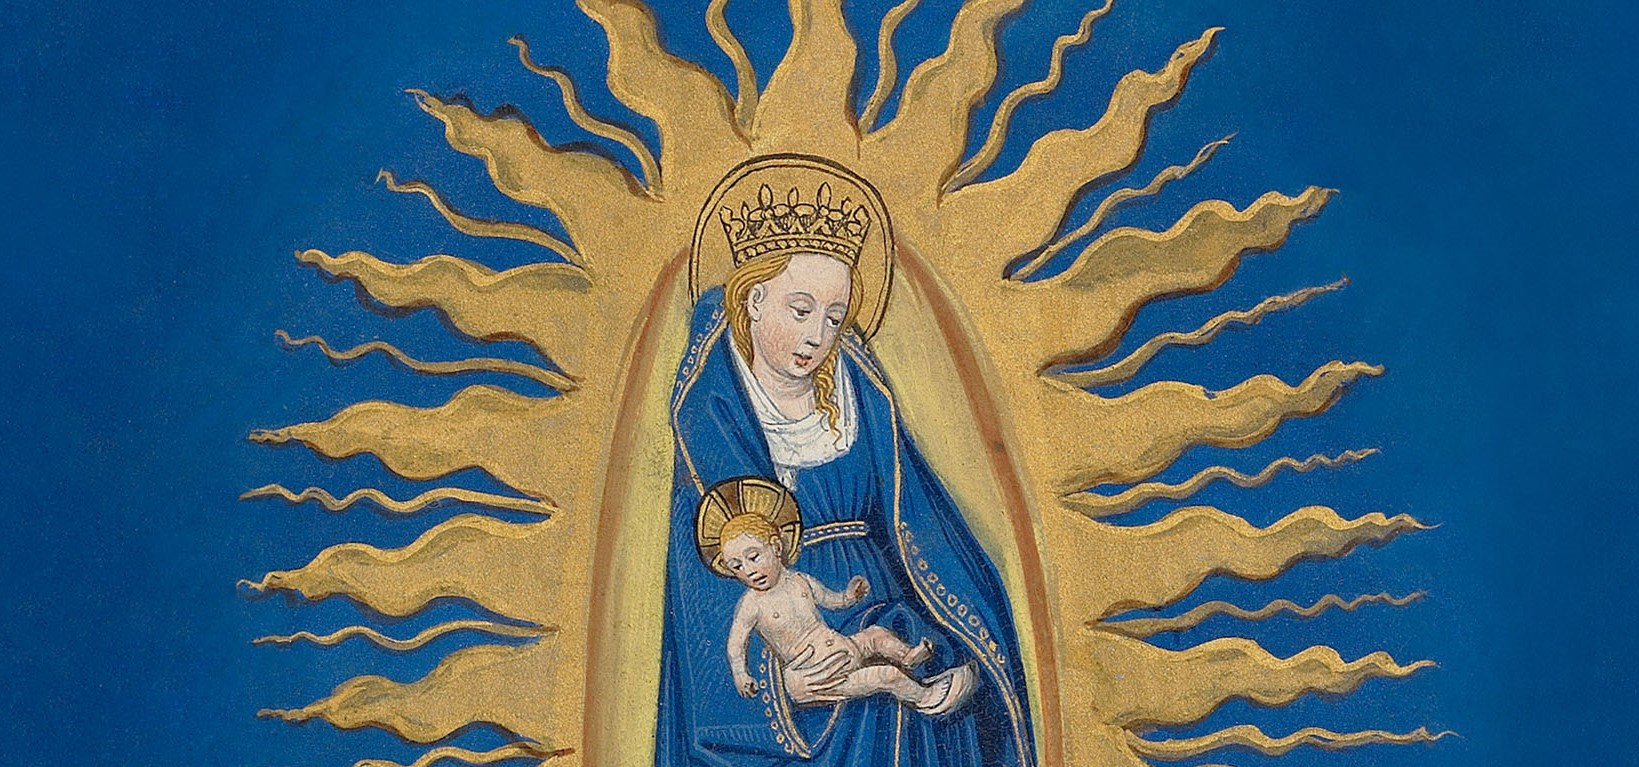 Выставка «Визуализация Девы Марии» открылась в Музее Гетти в Лос-Анджелесе